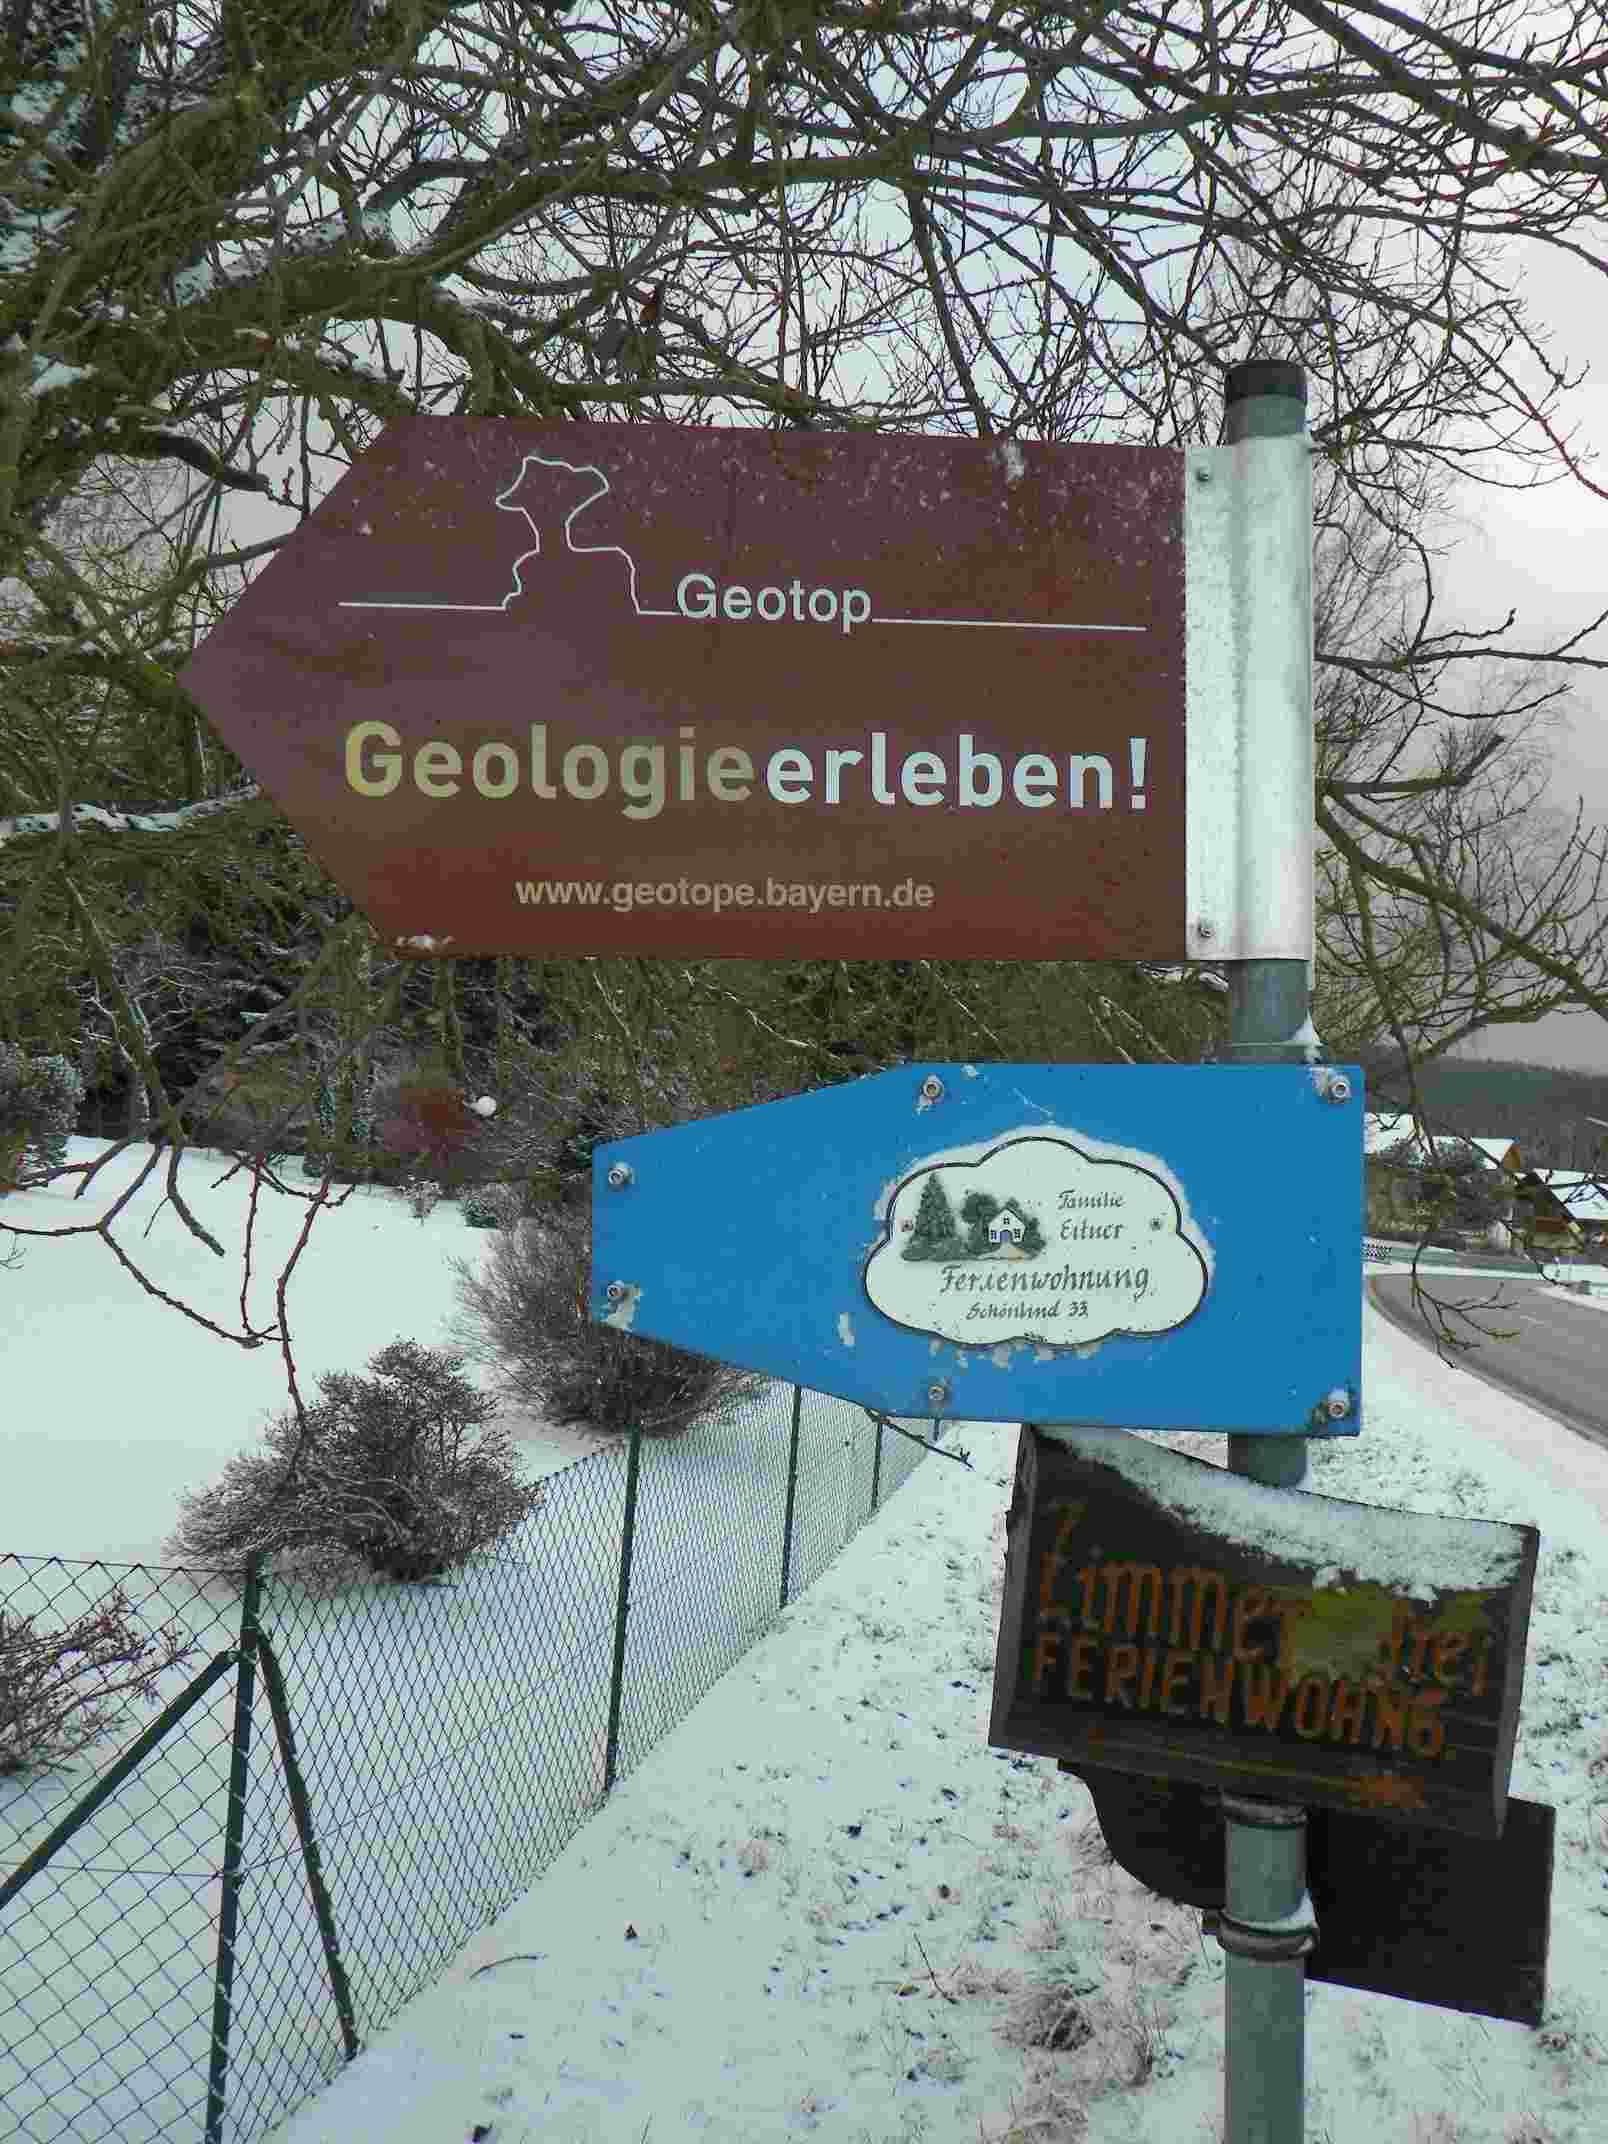 Geologie erleben und Ferienwohnung Eitner